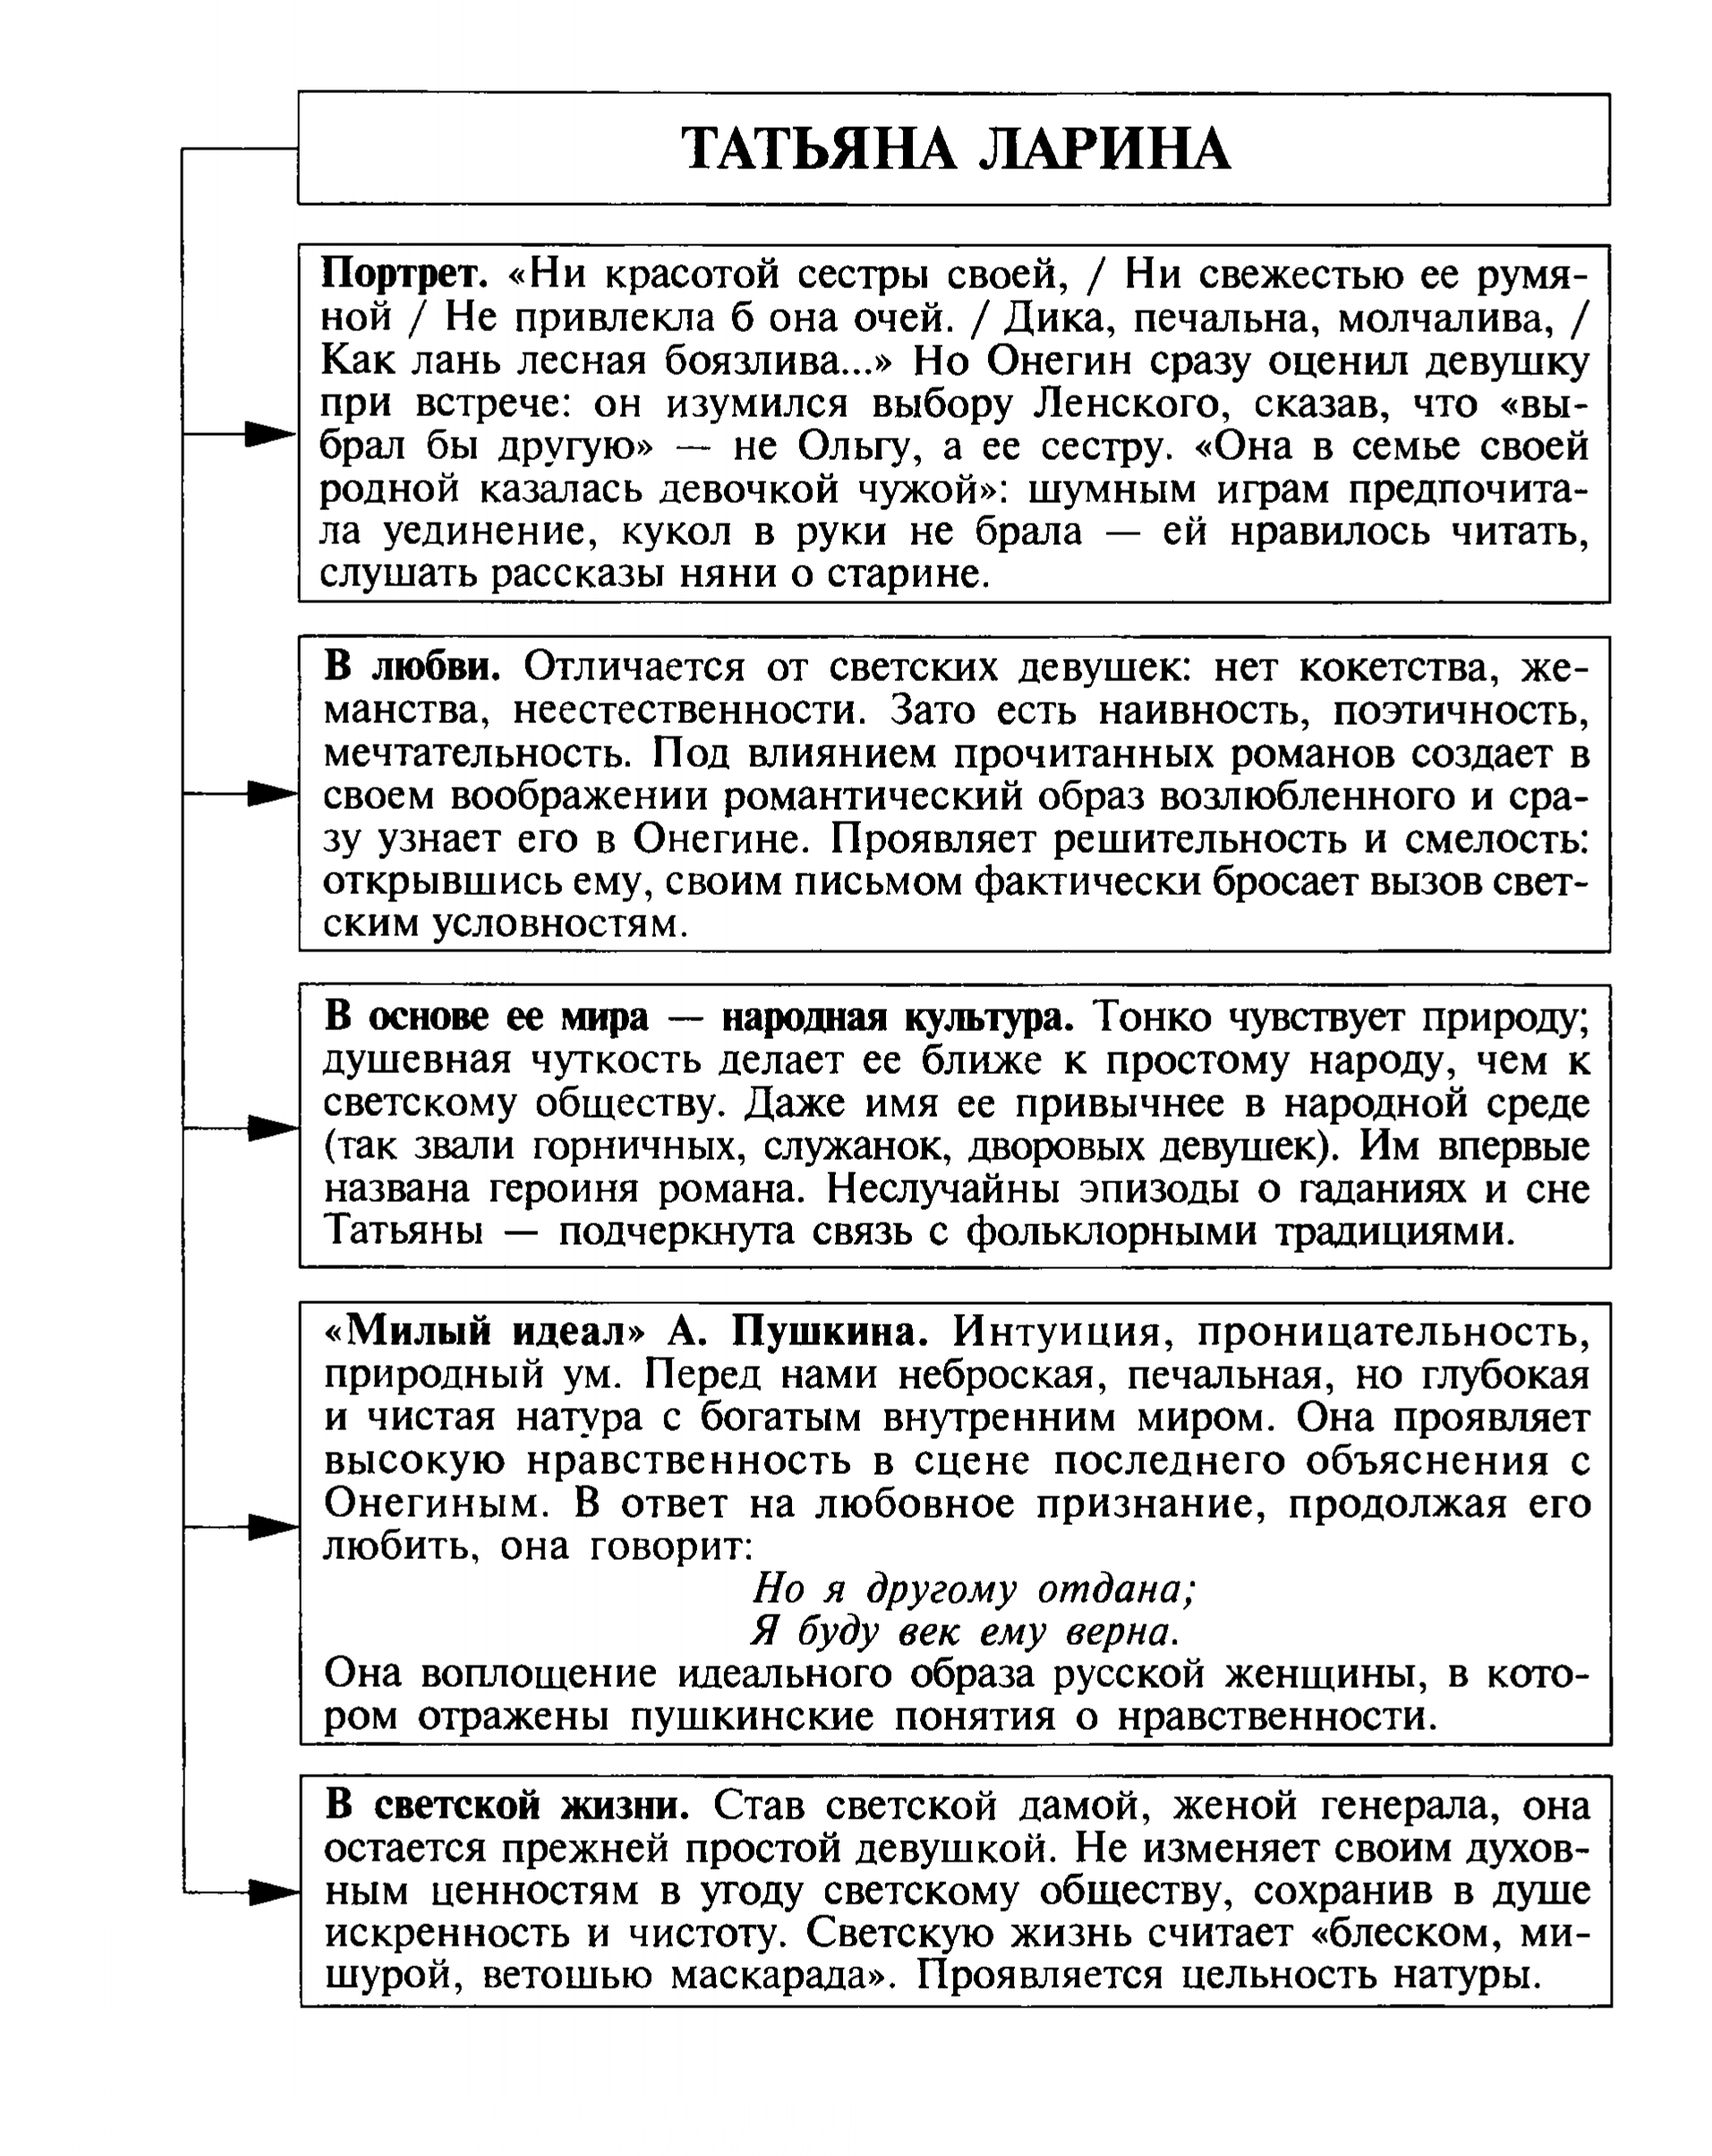 Татьяна Ларина (таблица)